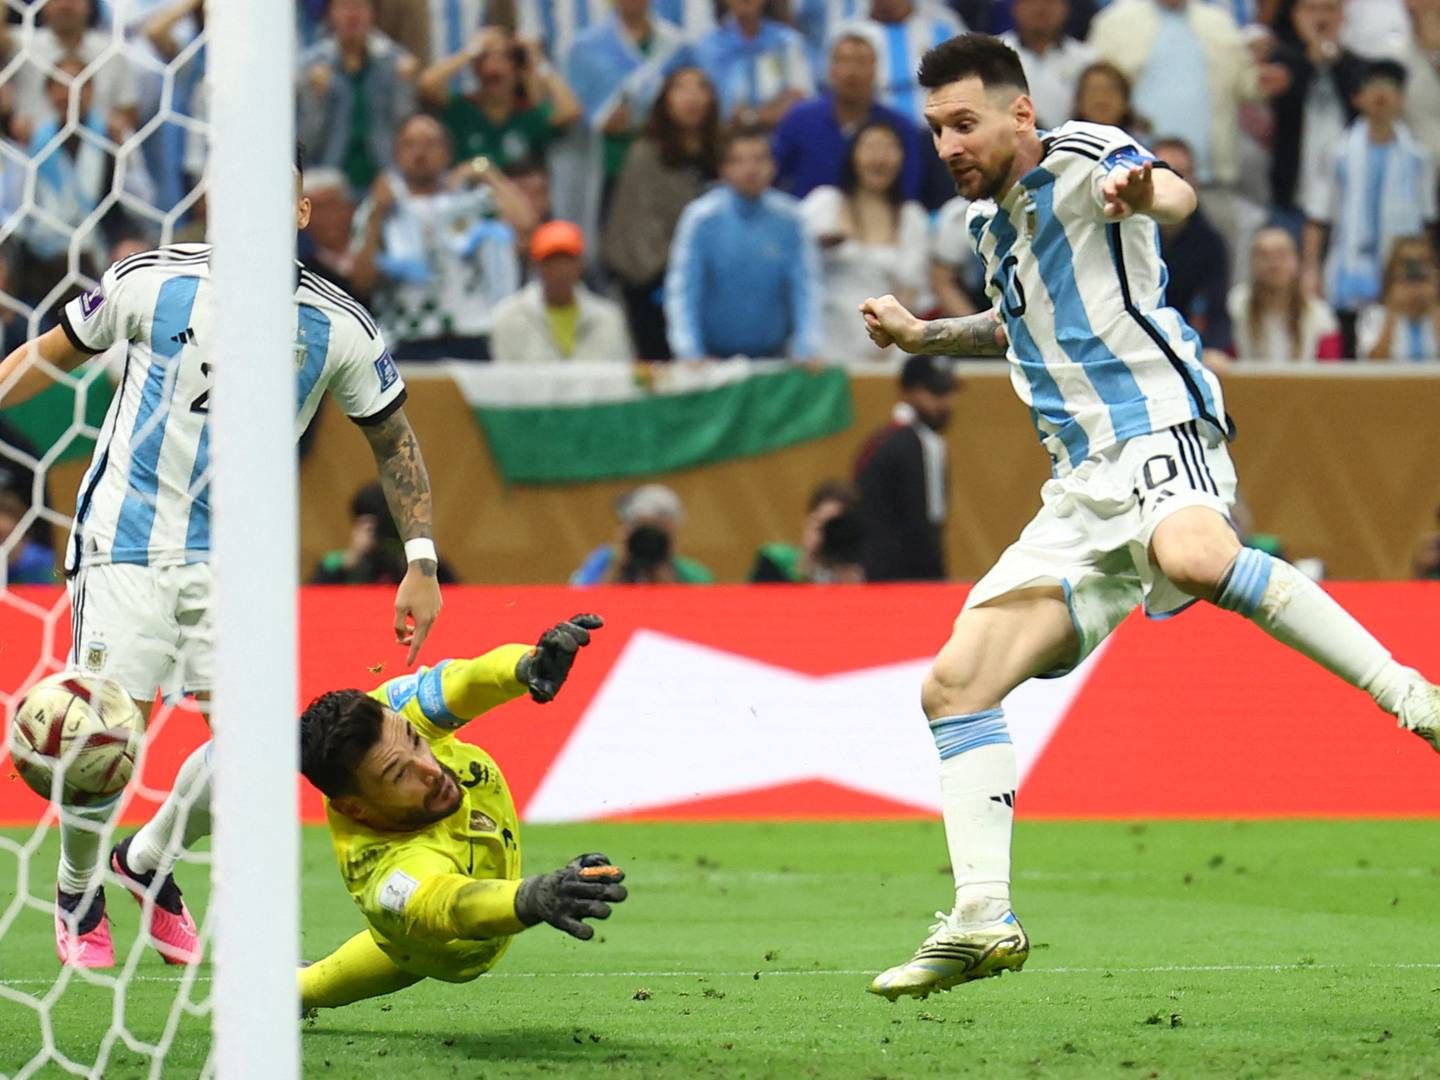 Næsten 1,4 mio. danskere så med i løbet af kampen, hvor Argentina slog Frankrig i straffesparkskonkurrencen. | Foto: KAI PFAFFENBACH/REUTERS / X00446